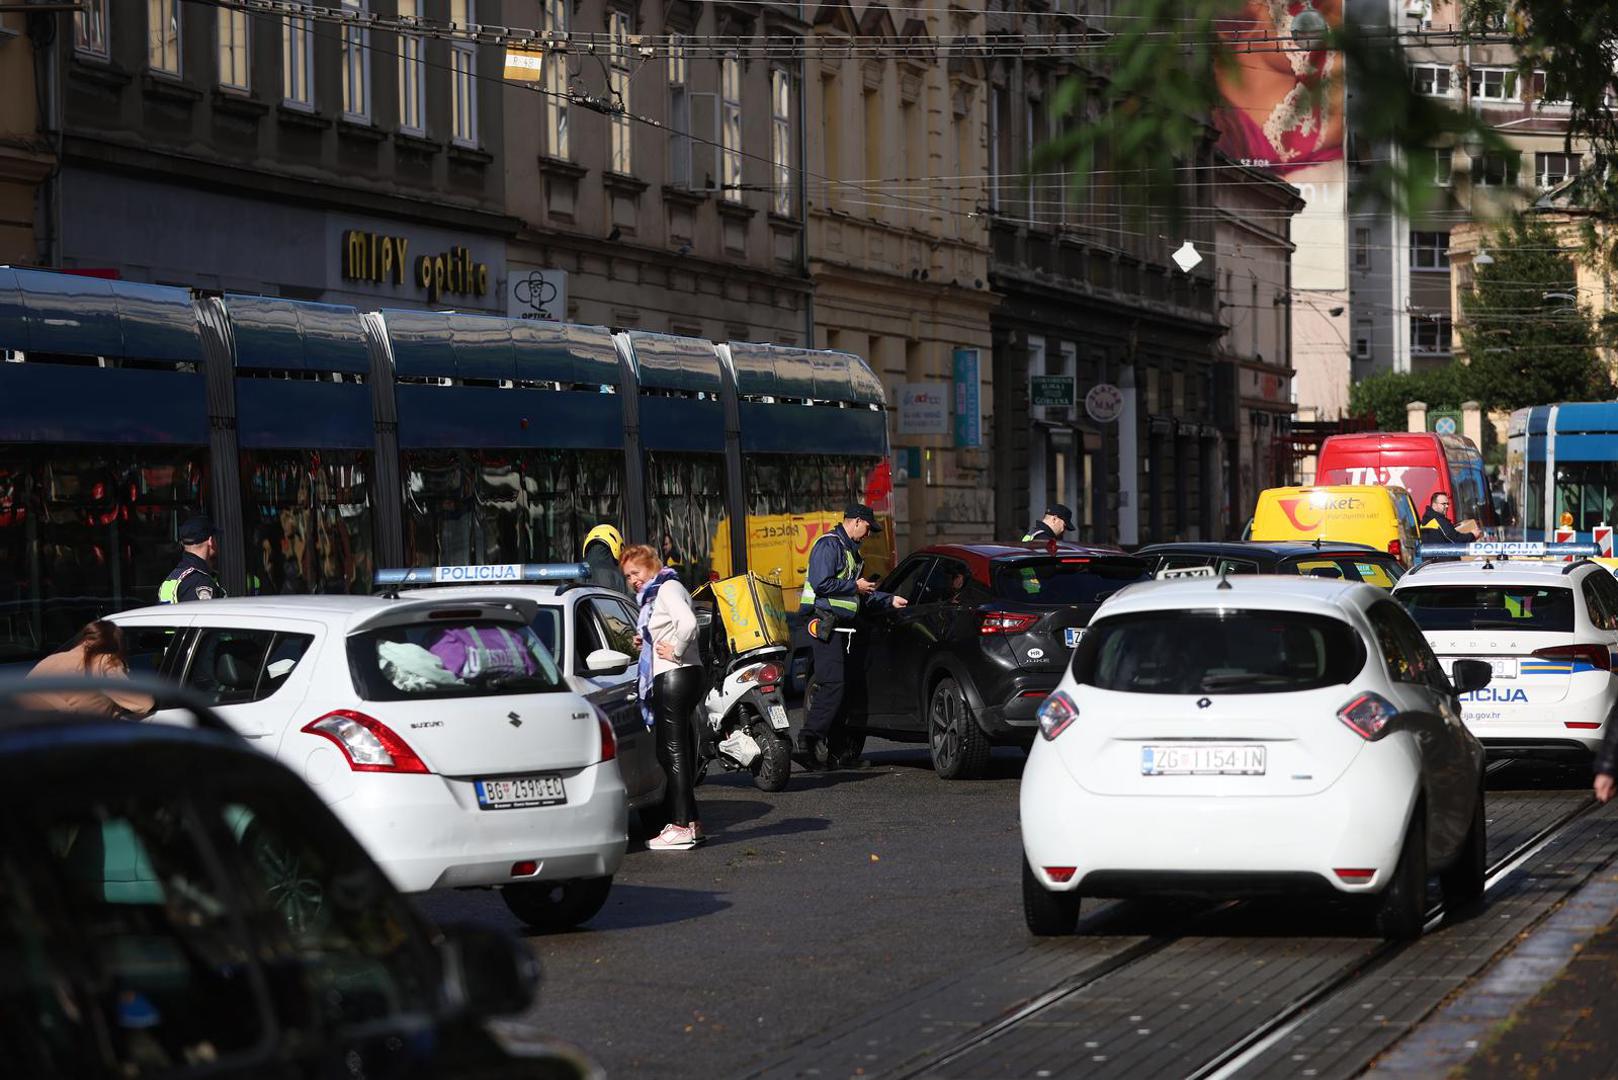 "Samo sam nakratko stao", "samo pet minuta", "nabrzinu da nešto obavim" – ovakvih i sličnih odgovora naslušali su se danas zagrebački policajci koji su odradili akciju tijekom poslijepodneva u vrlo prometnoj Draškovićevoj ulici. 